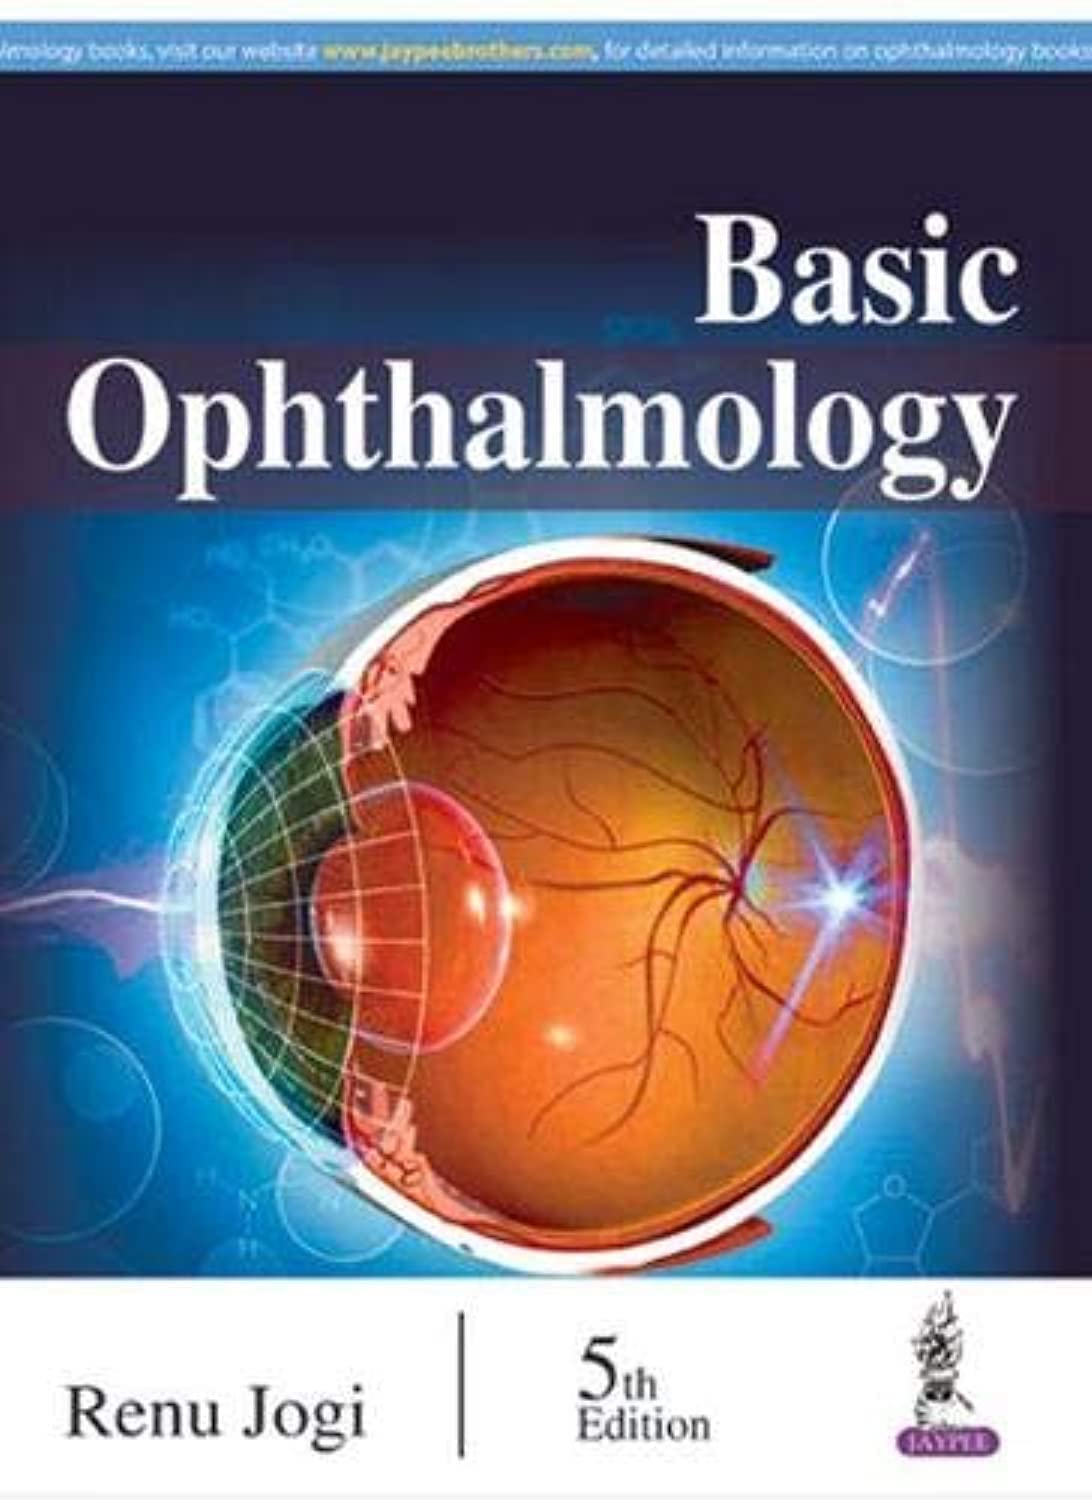 Basic Ophthalmology By Renu Jogi  5th Edition